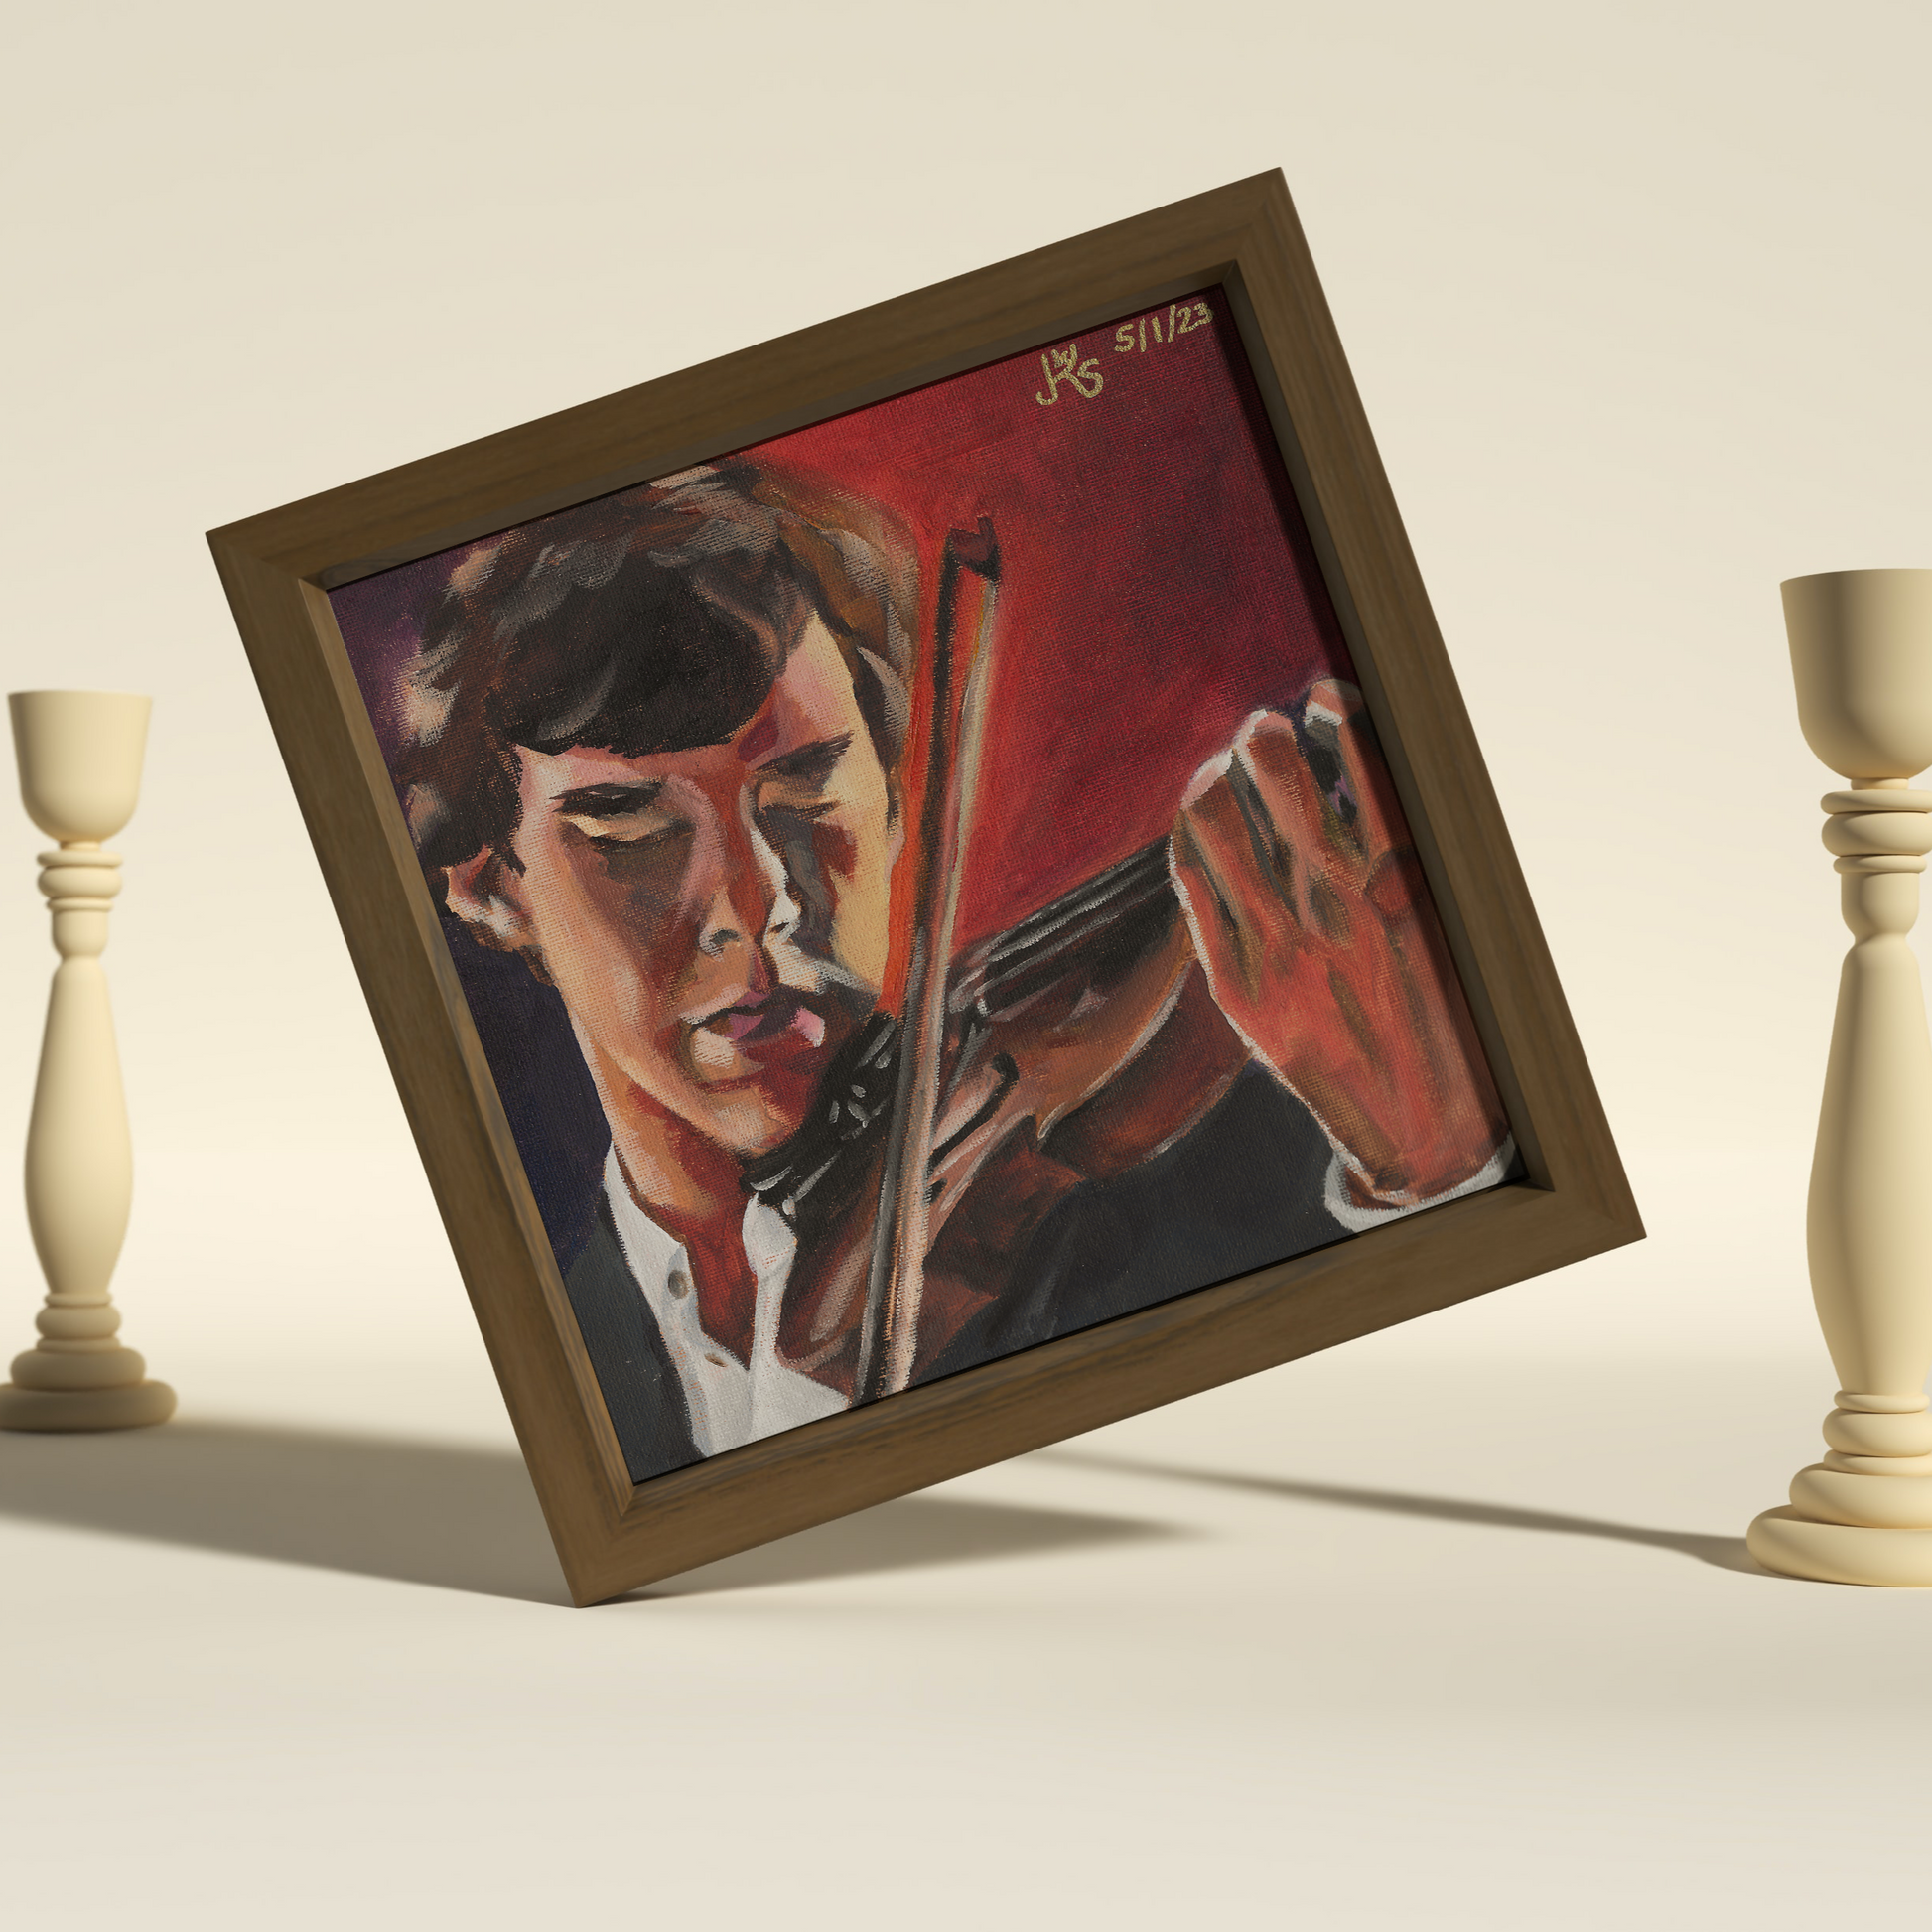 Postkartenset "Holmes & Watson" in Fine Art Qualität limitiert auf 250 Sets